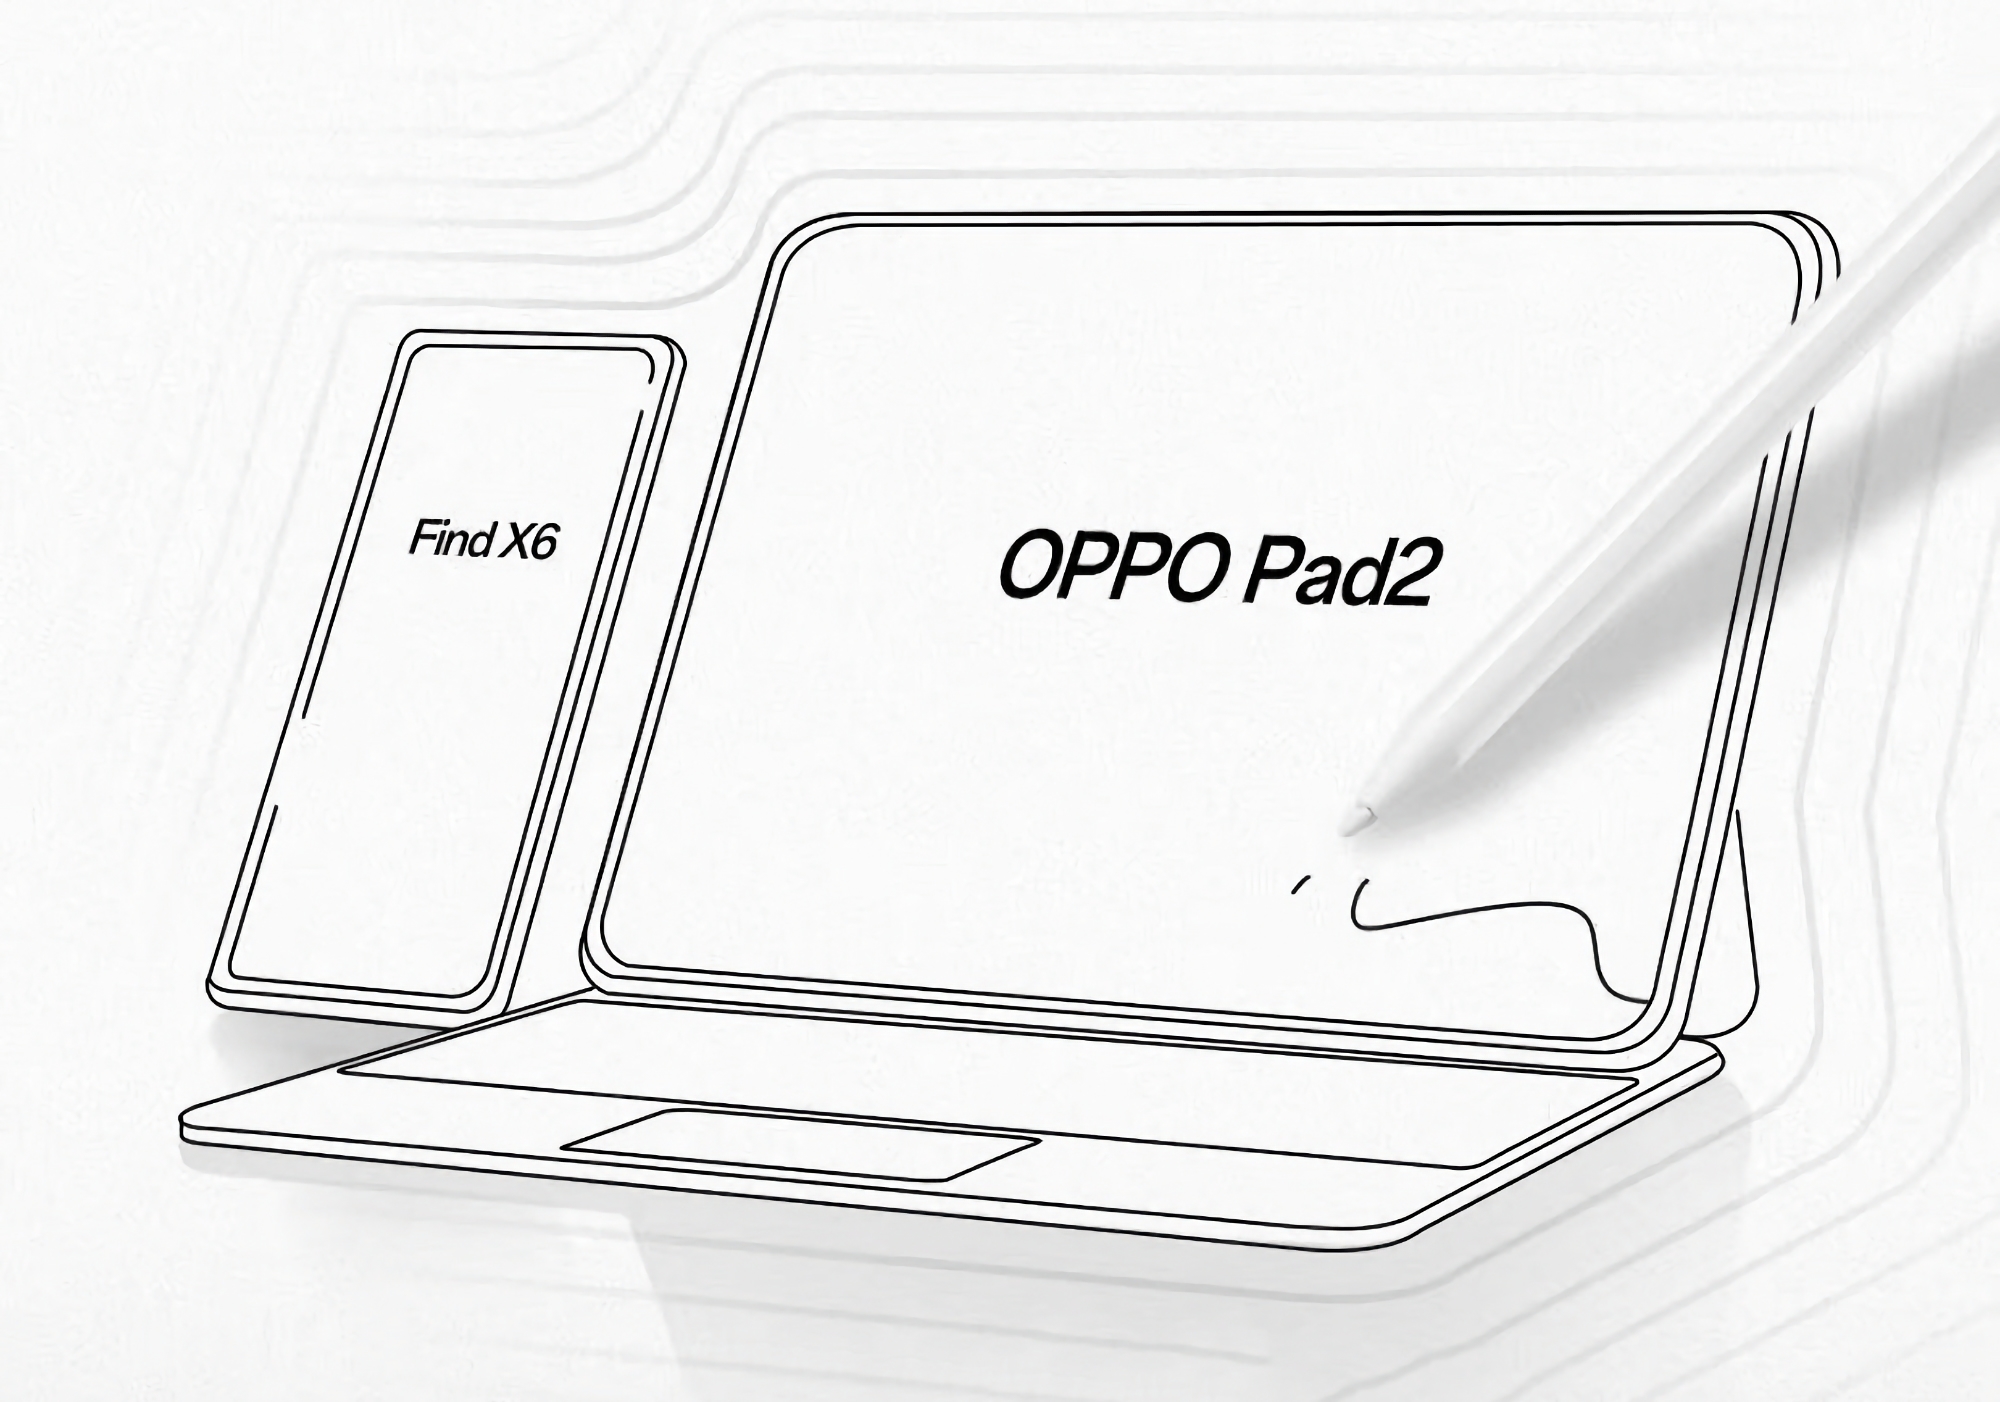 Insider pokazuje, jak będzie wyglądał tablet OPPO Pad 2 z rysikiem i markowym etui na klawiaturę